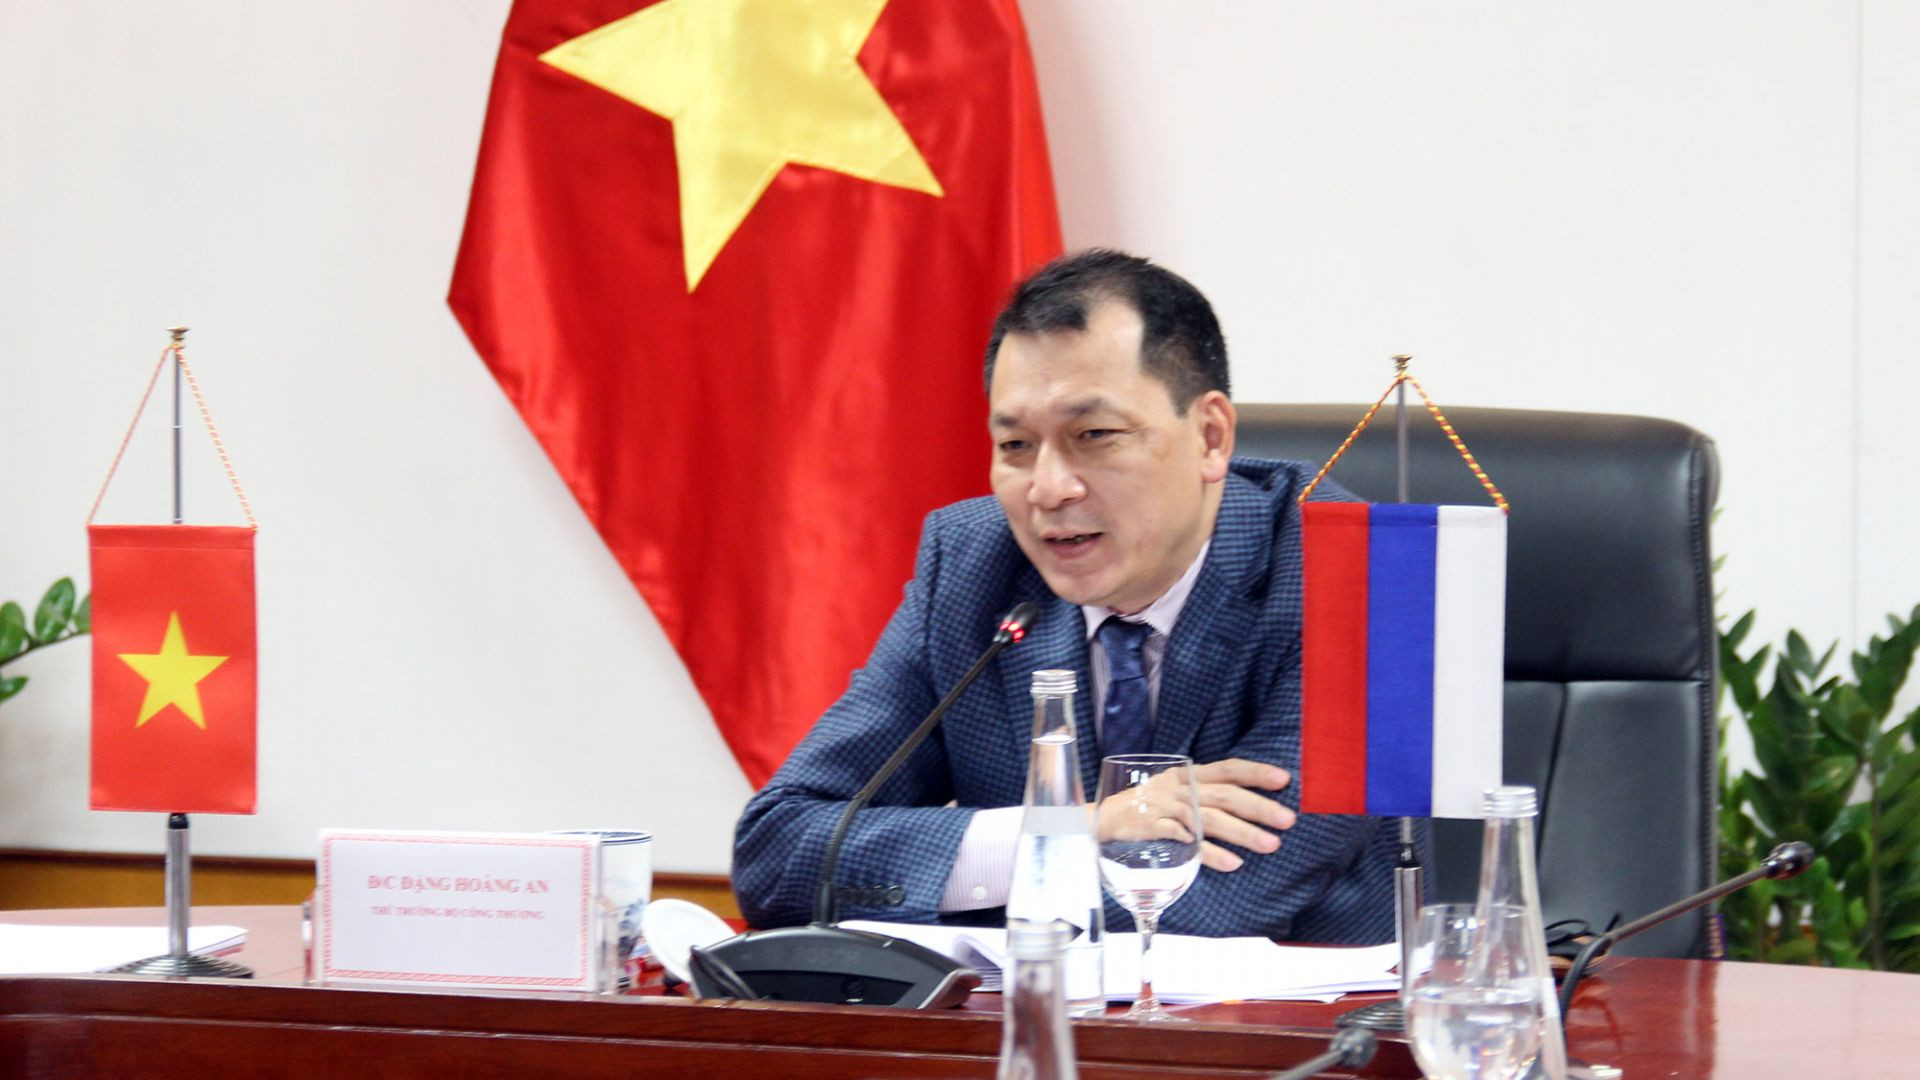 Thứ trưởng Đặng Hoàng An khẳng định, Việt Nam luôn coi trọng dự án hợp tác với Liên bang Nga về sản xuất phương tiện vận tải có động cơ, coi đây là tiền đề quan trọng cho hợp tác song phương trong lĩnh vực công nghiệp thời gian tới